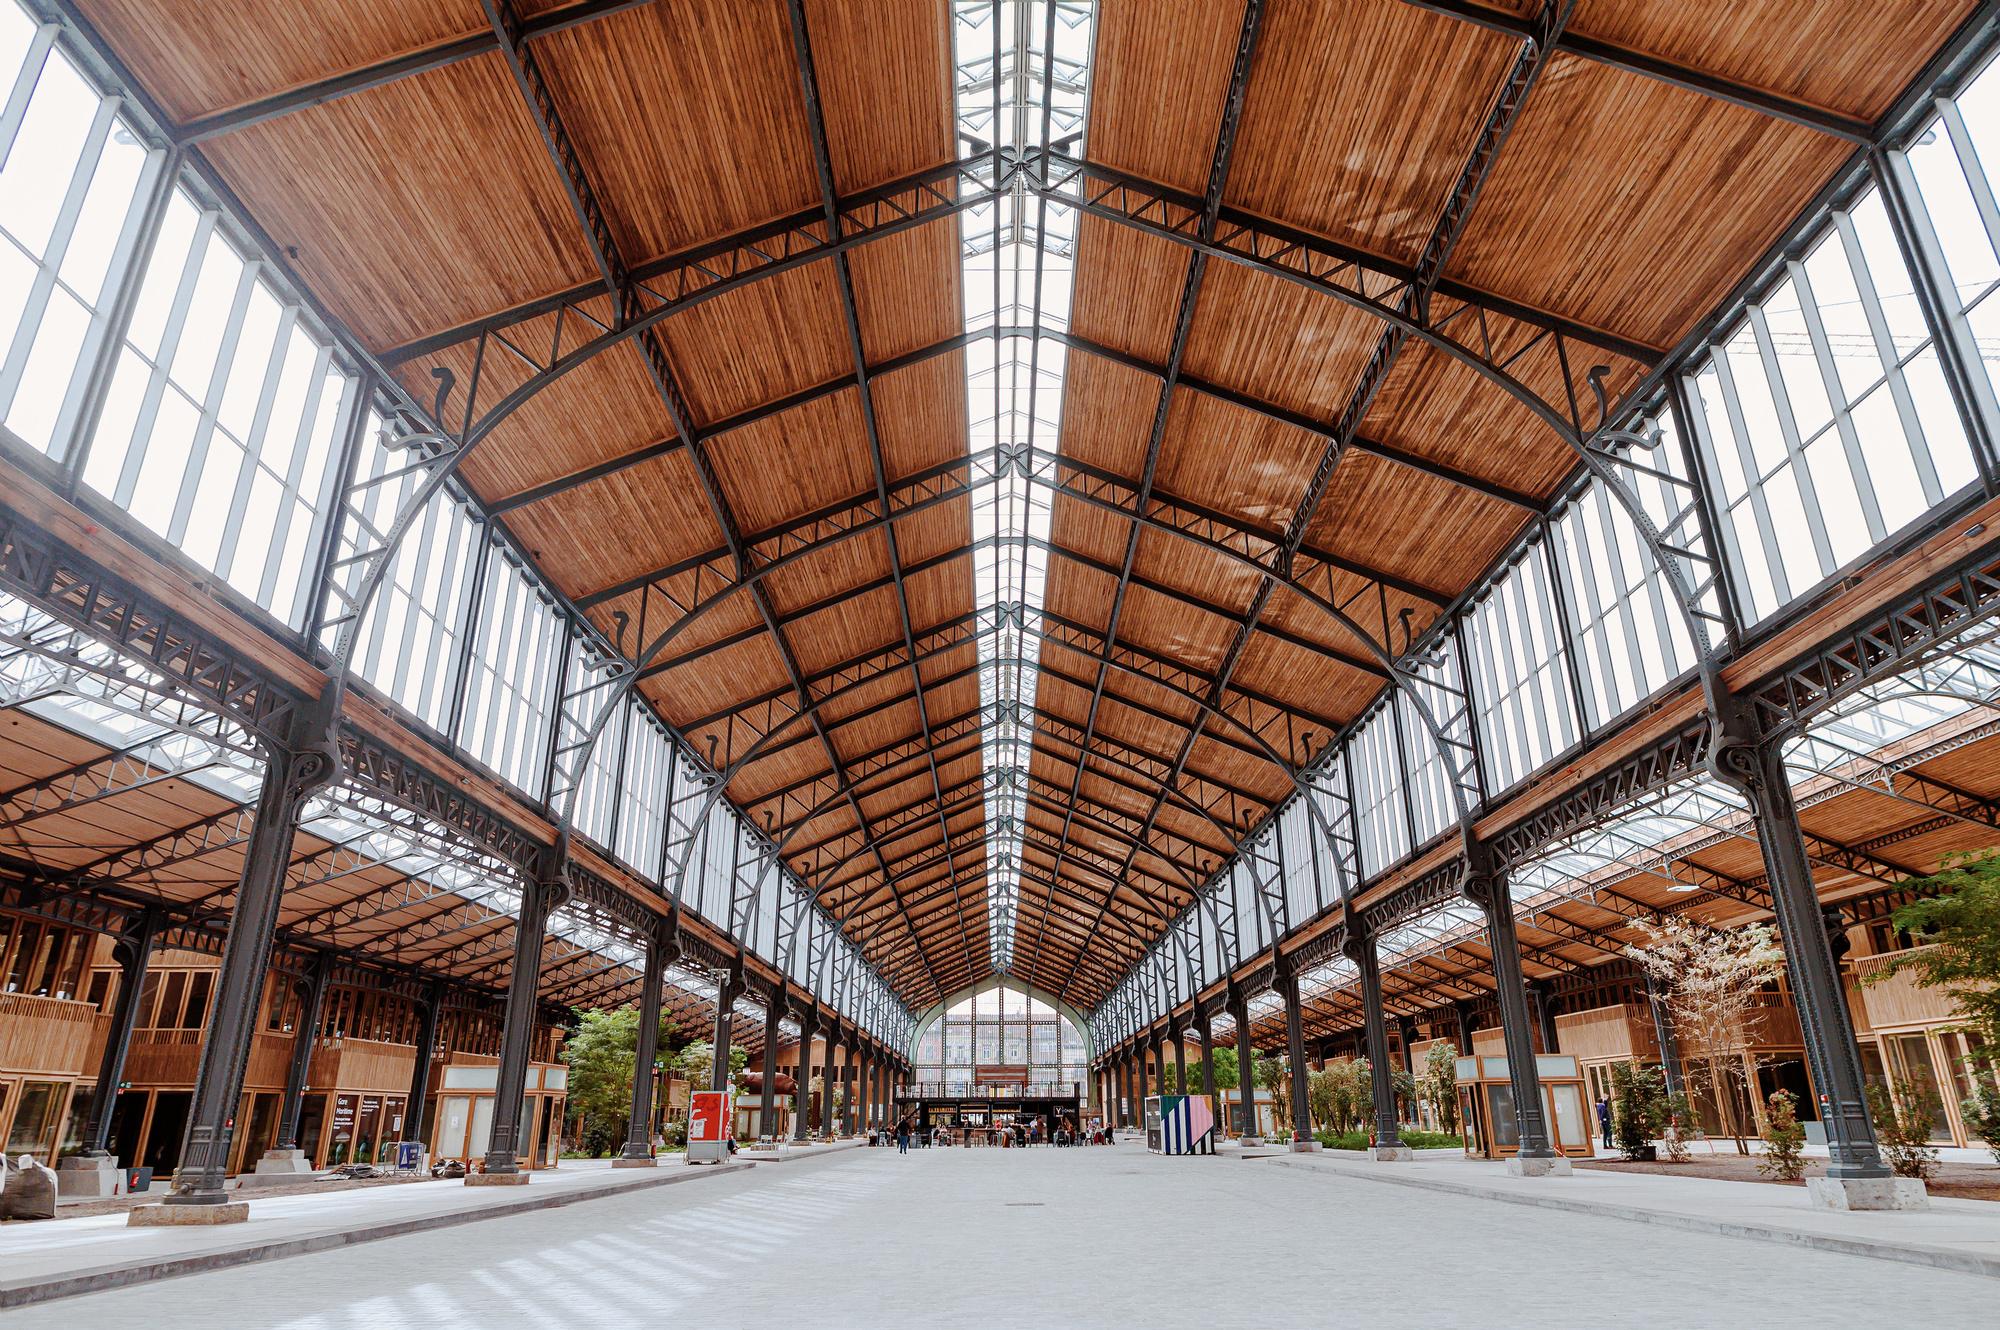 Het indrukwekkende Gare Maritime in Brussel, waar de twee designmarkten plaatsvinden